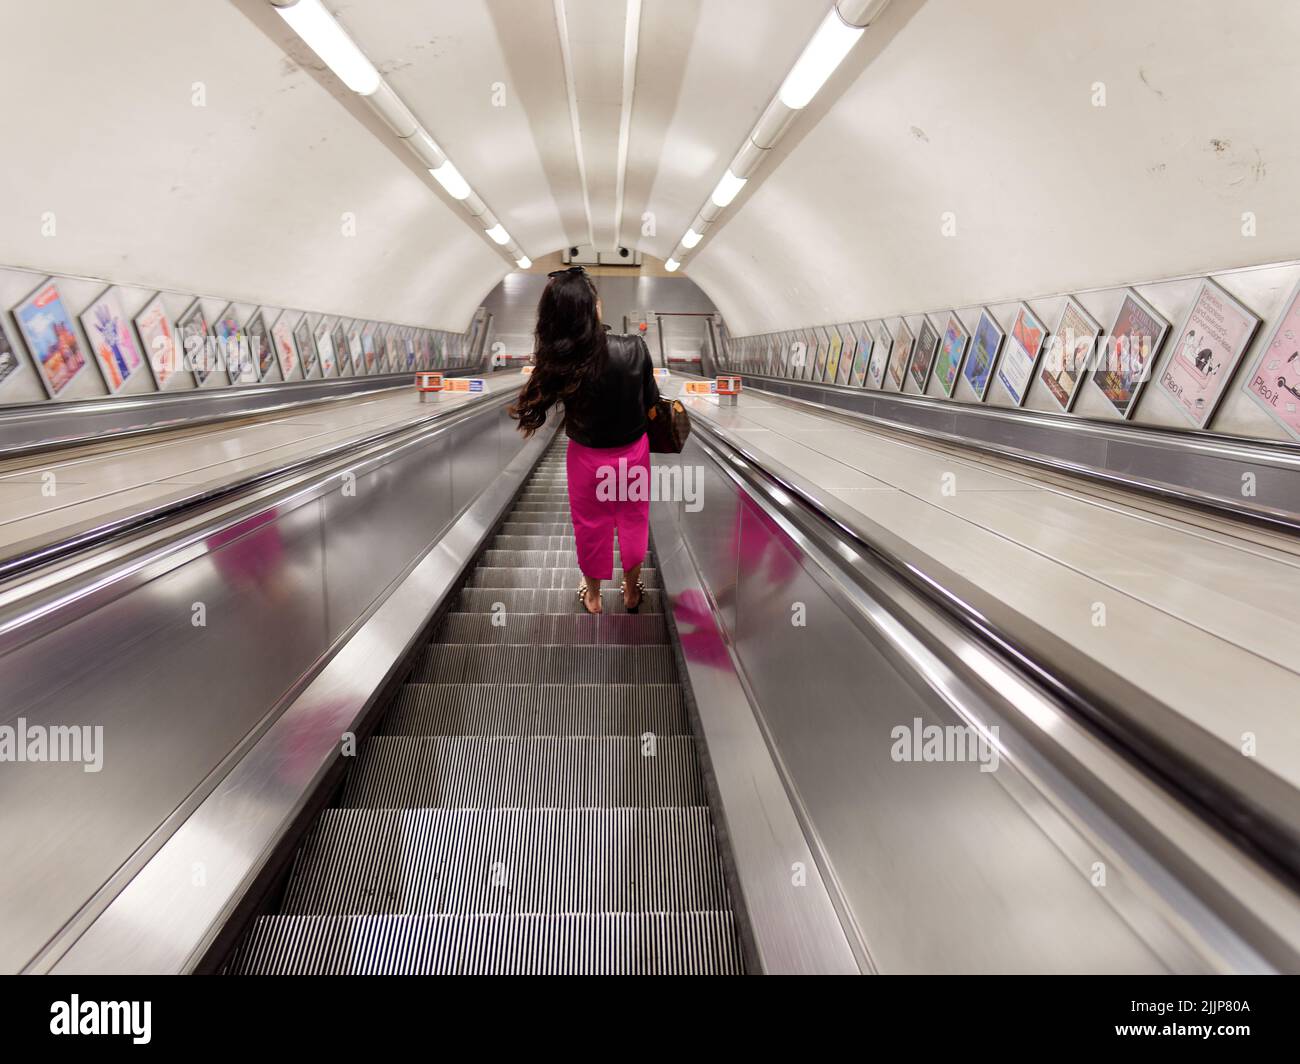 Londres, Grand Londres, Angleterre, 02 juillet 2022 : Dame avec un pantalon rose et une veste noire sur un escalier roulant sur une station de métro autrement vide Banque D'Images